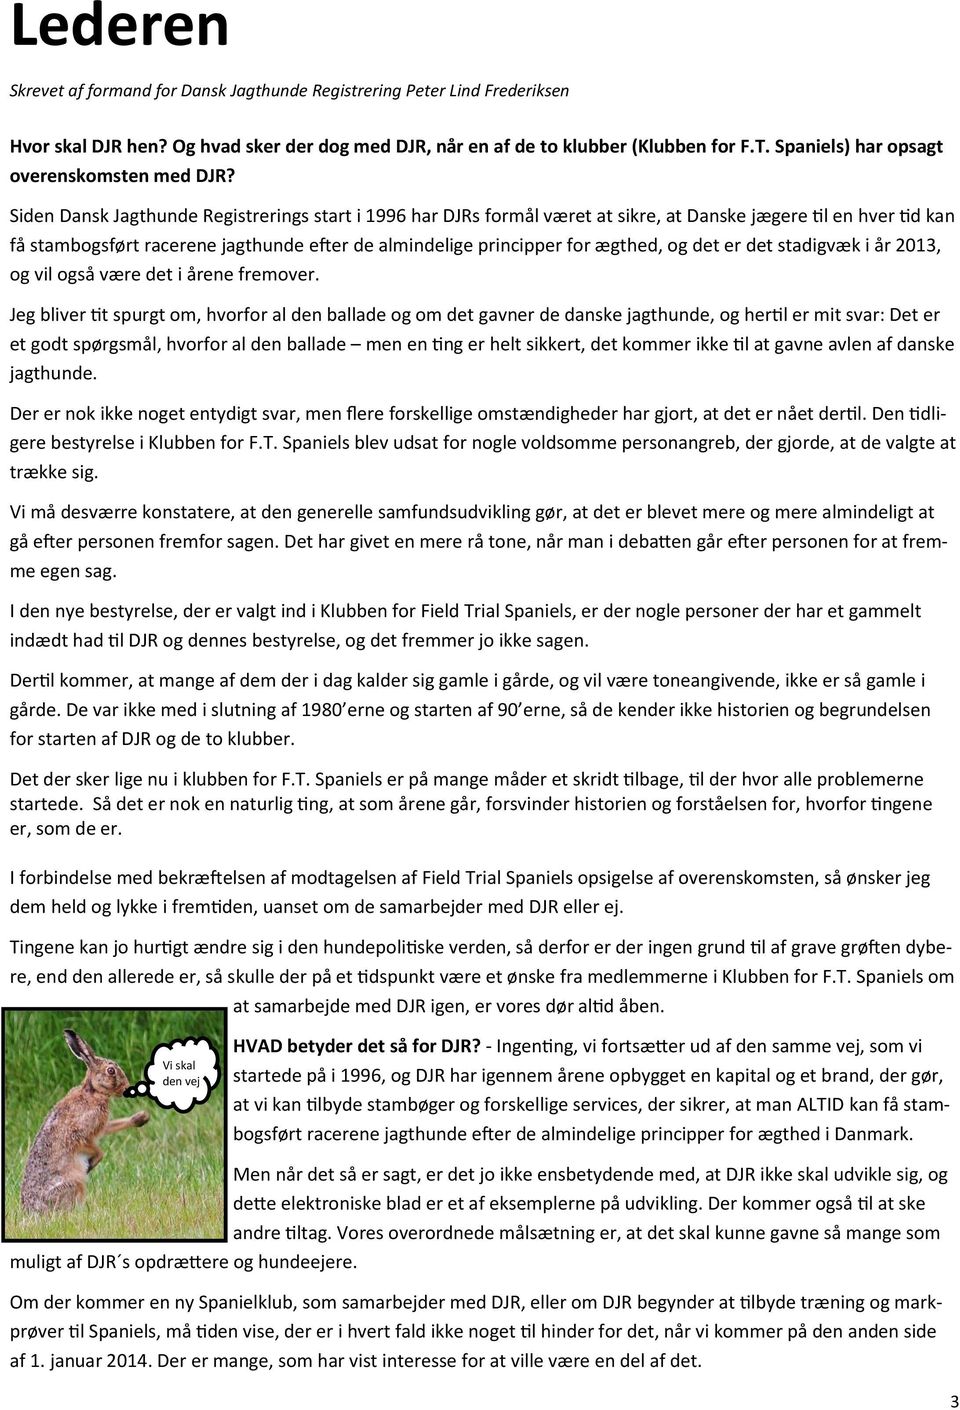 Siden Dansk Jagthunde Registrerings start i 1996 har DJRs formål været at sikre, at Danske jægere til en hver tid kan få stambogsført racerene jagthunde efter de almindelige principper for ægthed, og